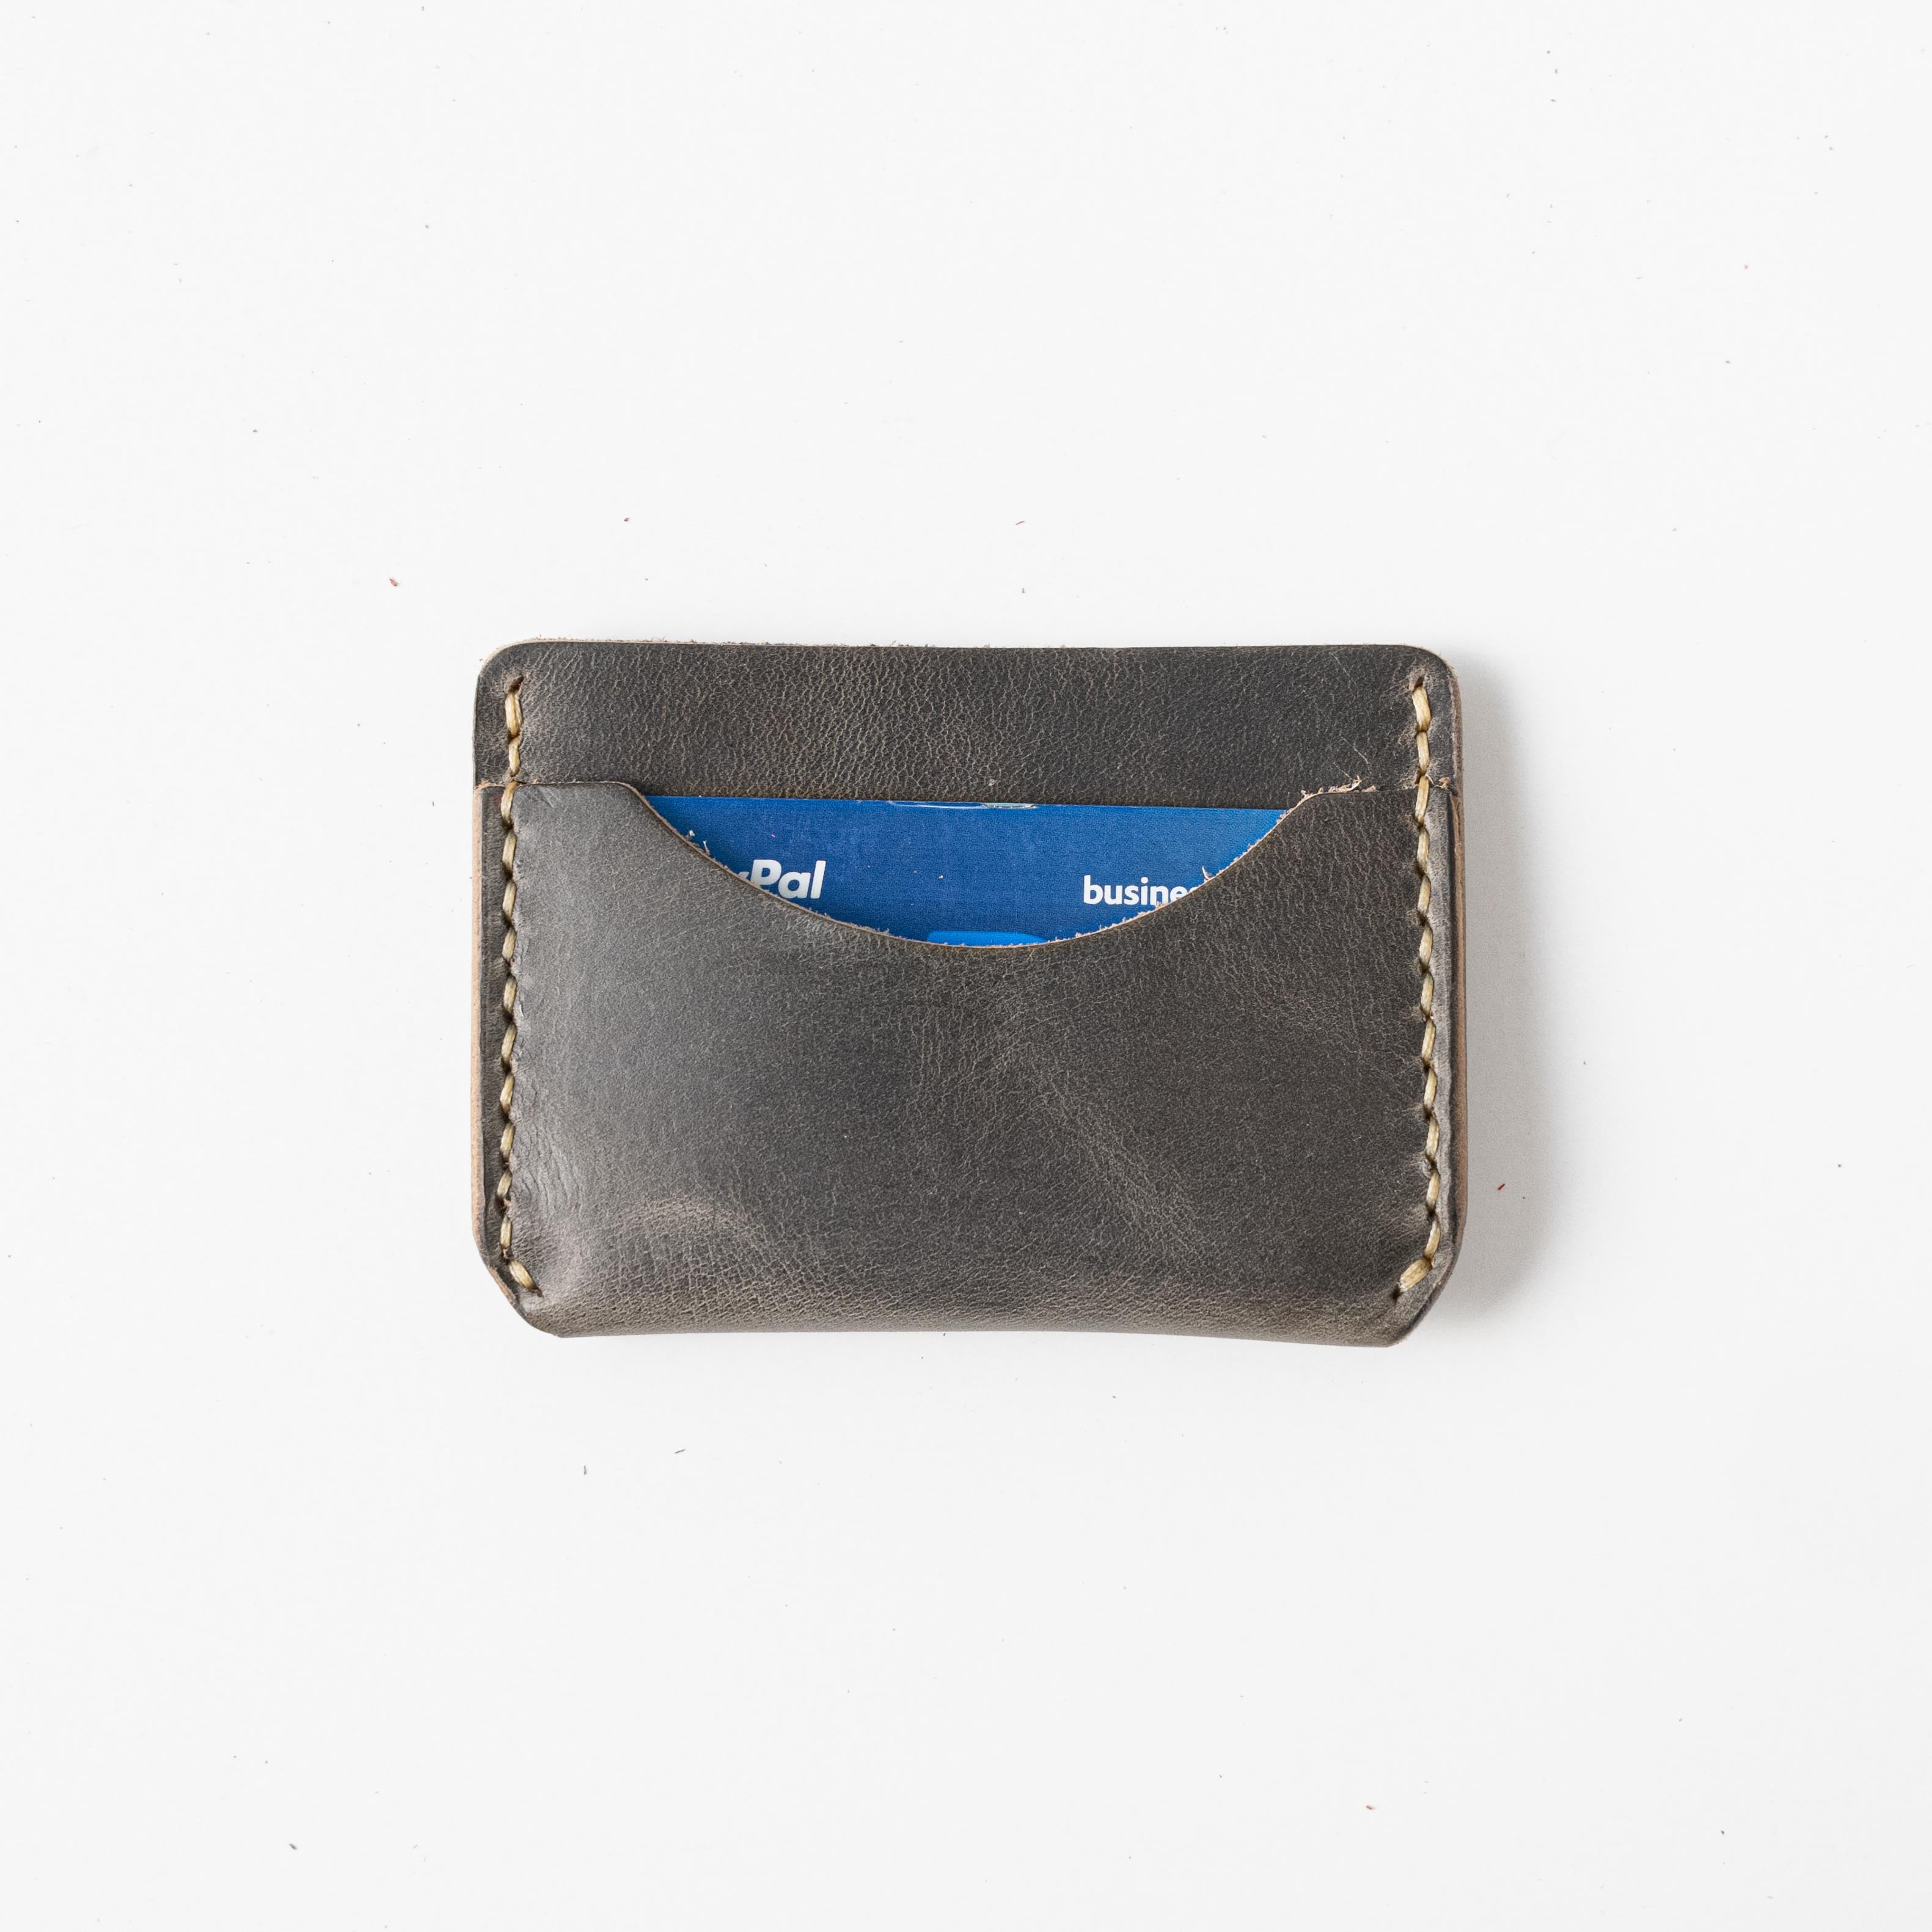 Zipper Wallets for Men or Women Waxed Canvas Keychain Wallet 